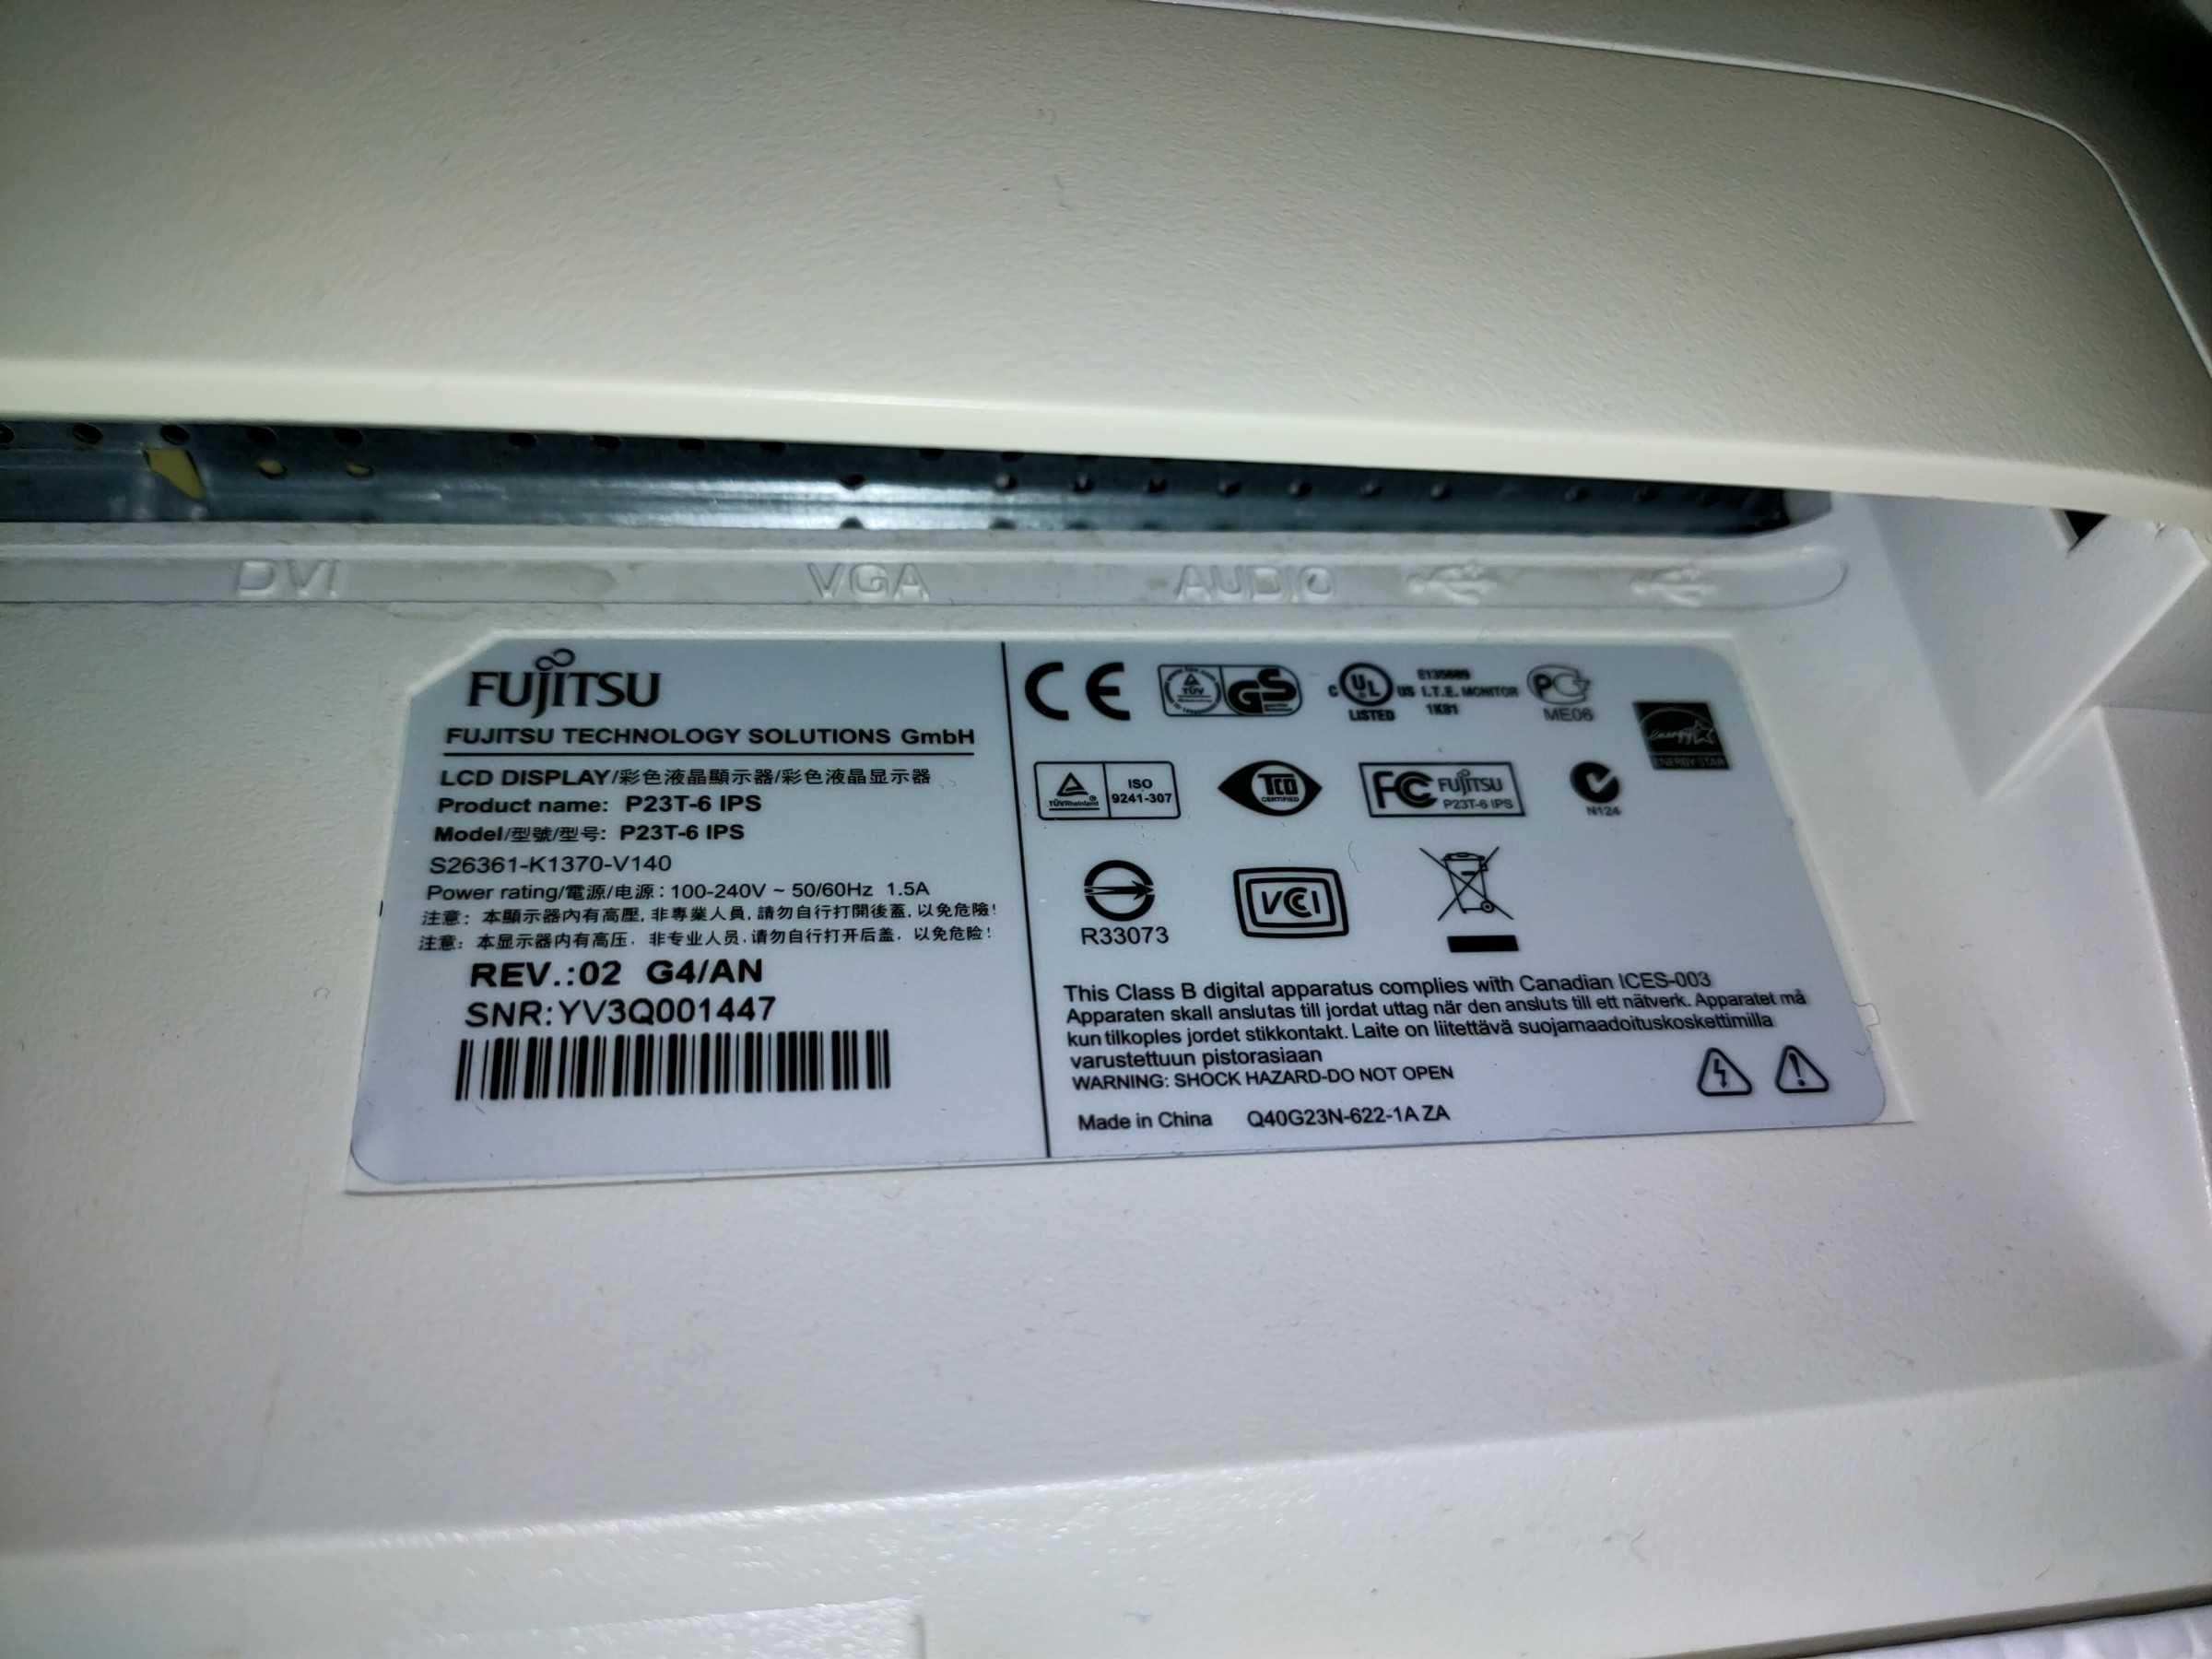 Monitor Fujitsu P23T-6 IPS 1920x1080